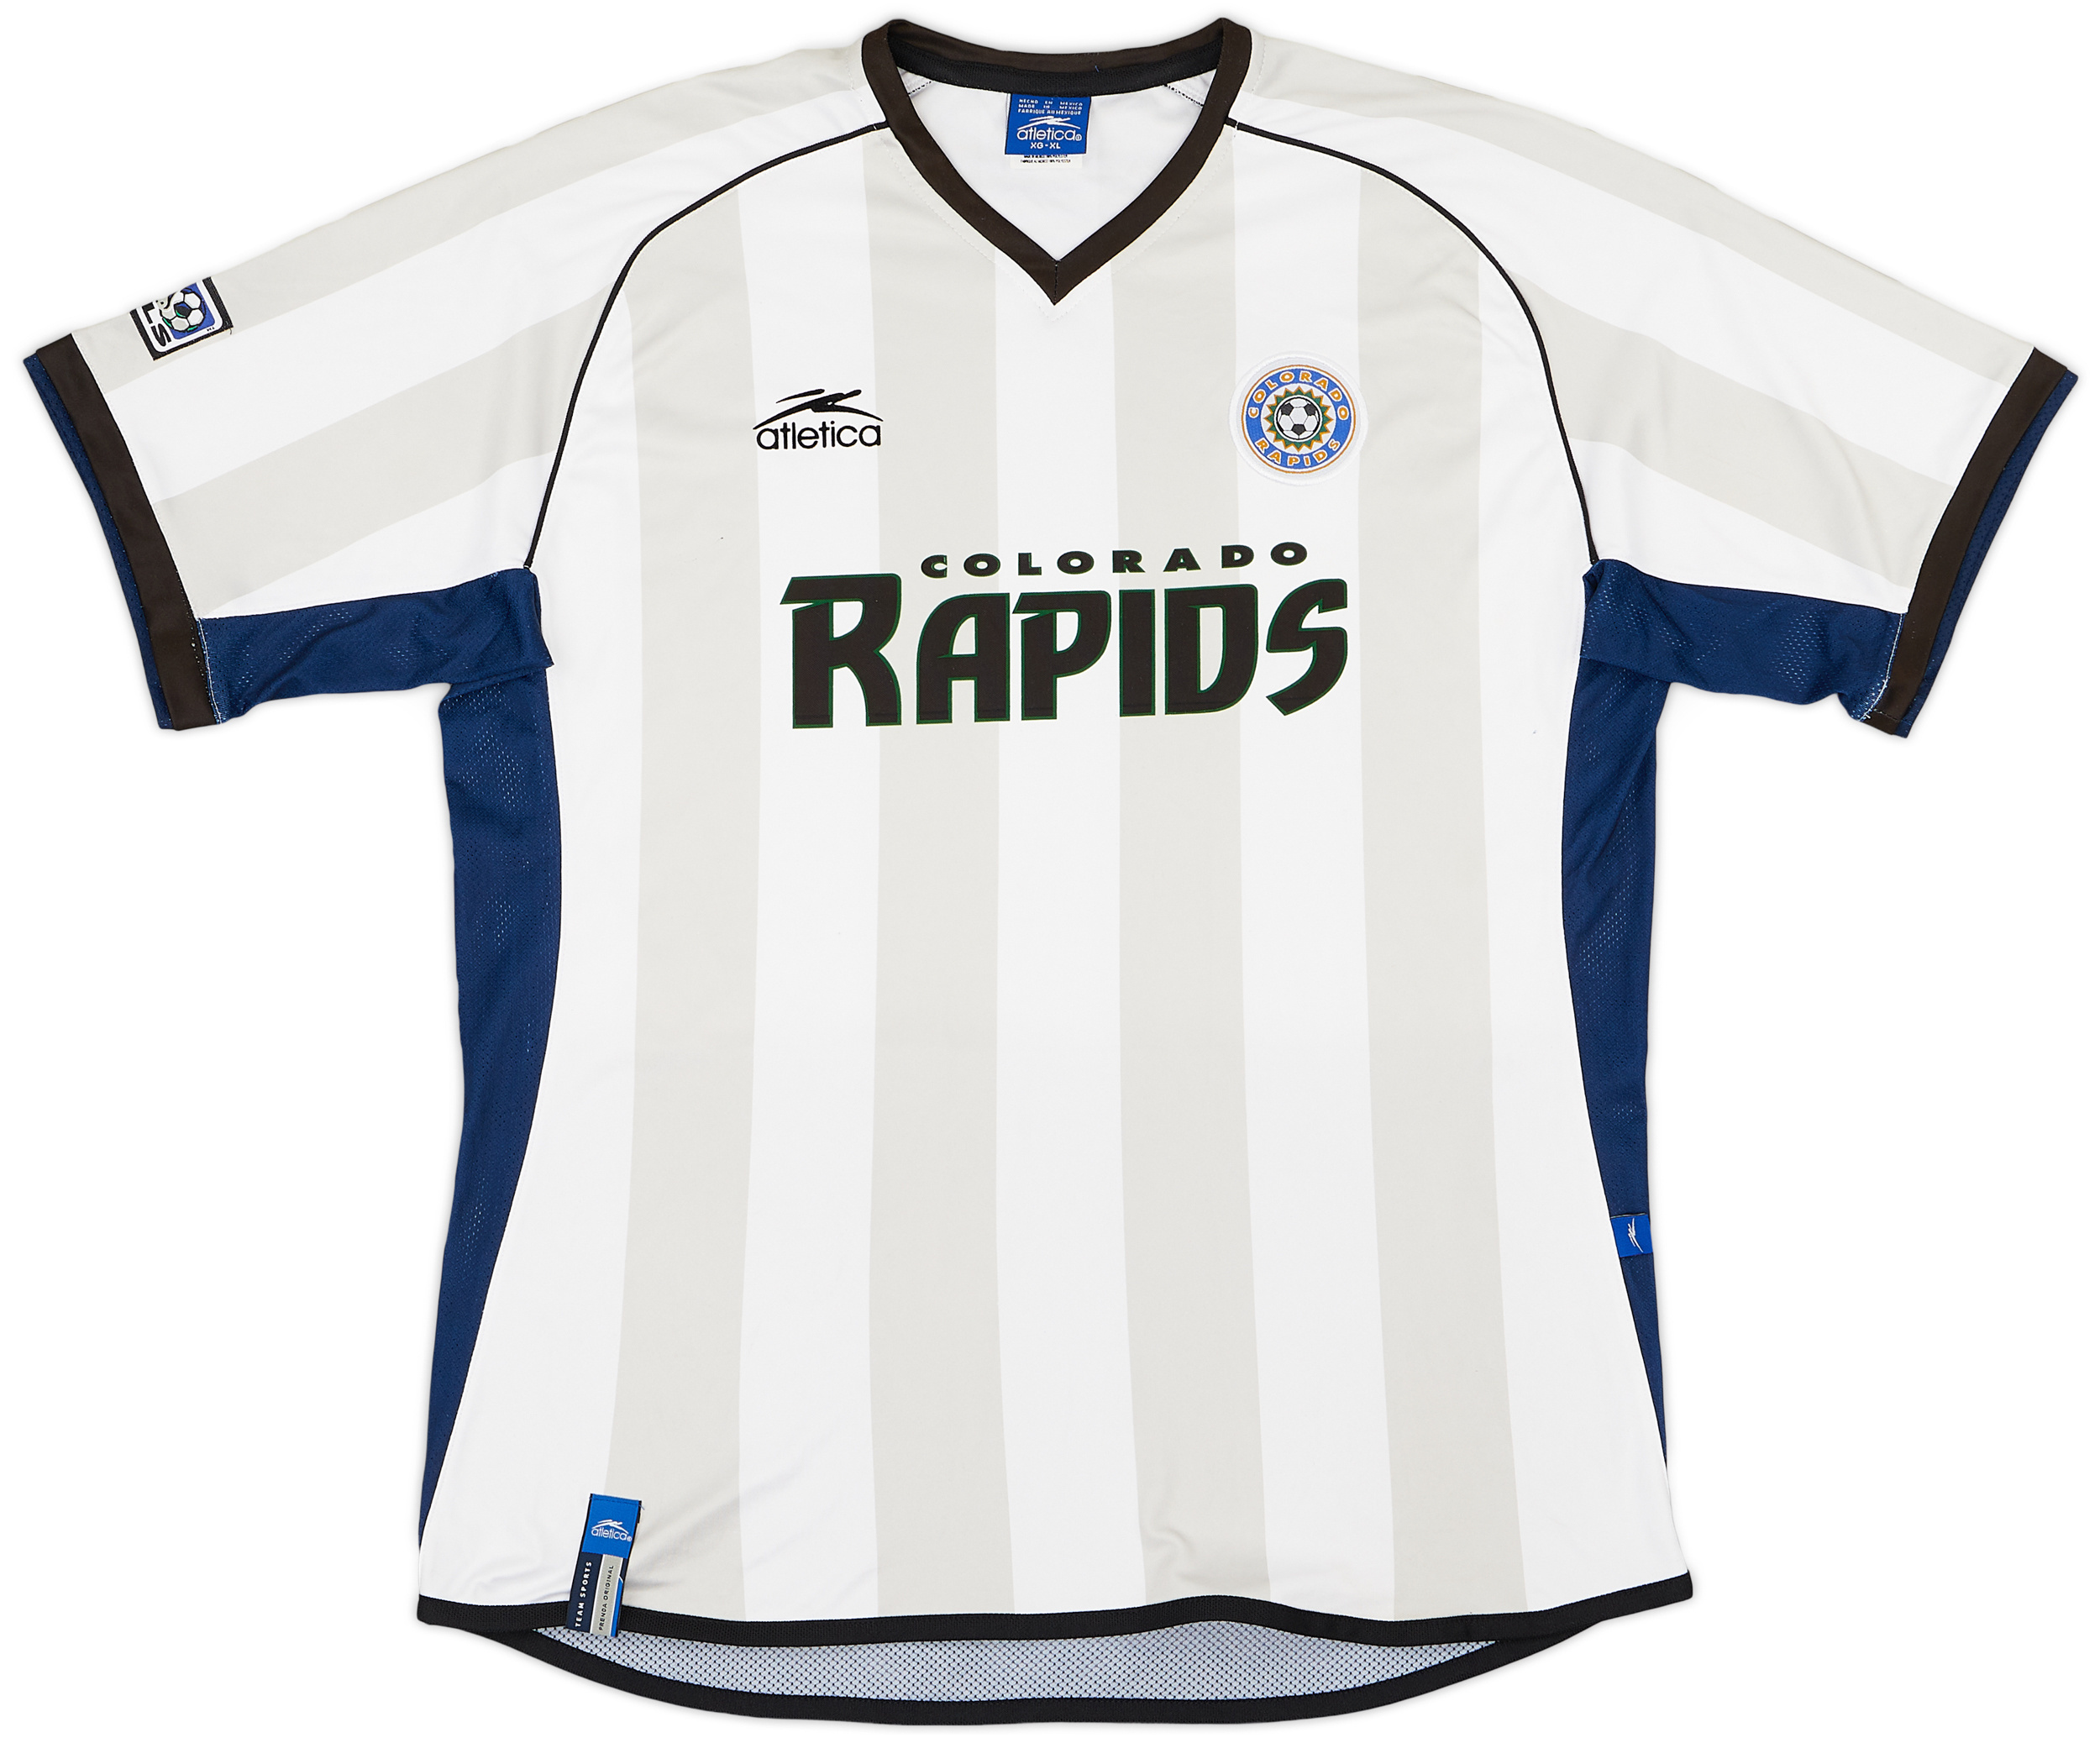 2003 Colorado Rapids Away Shirt - 9/10 - ()